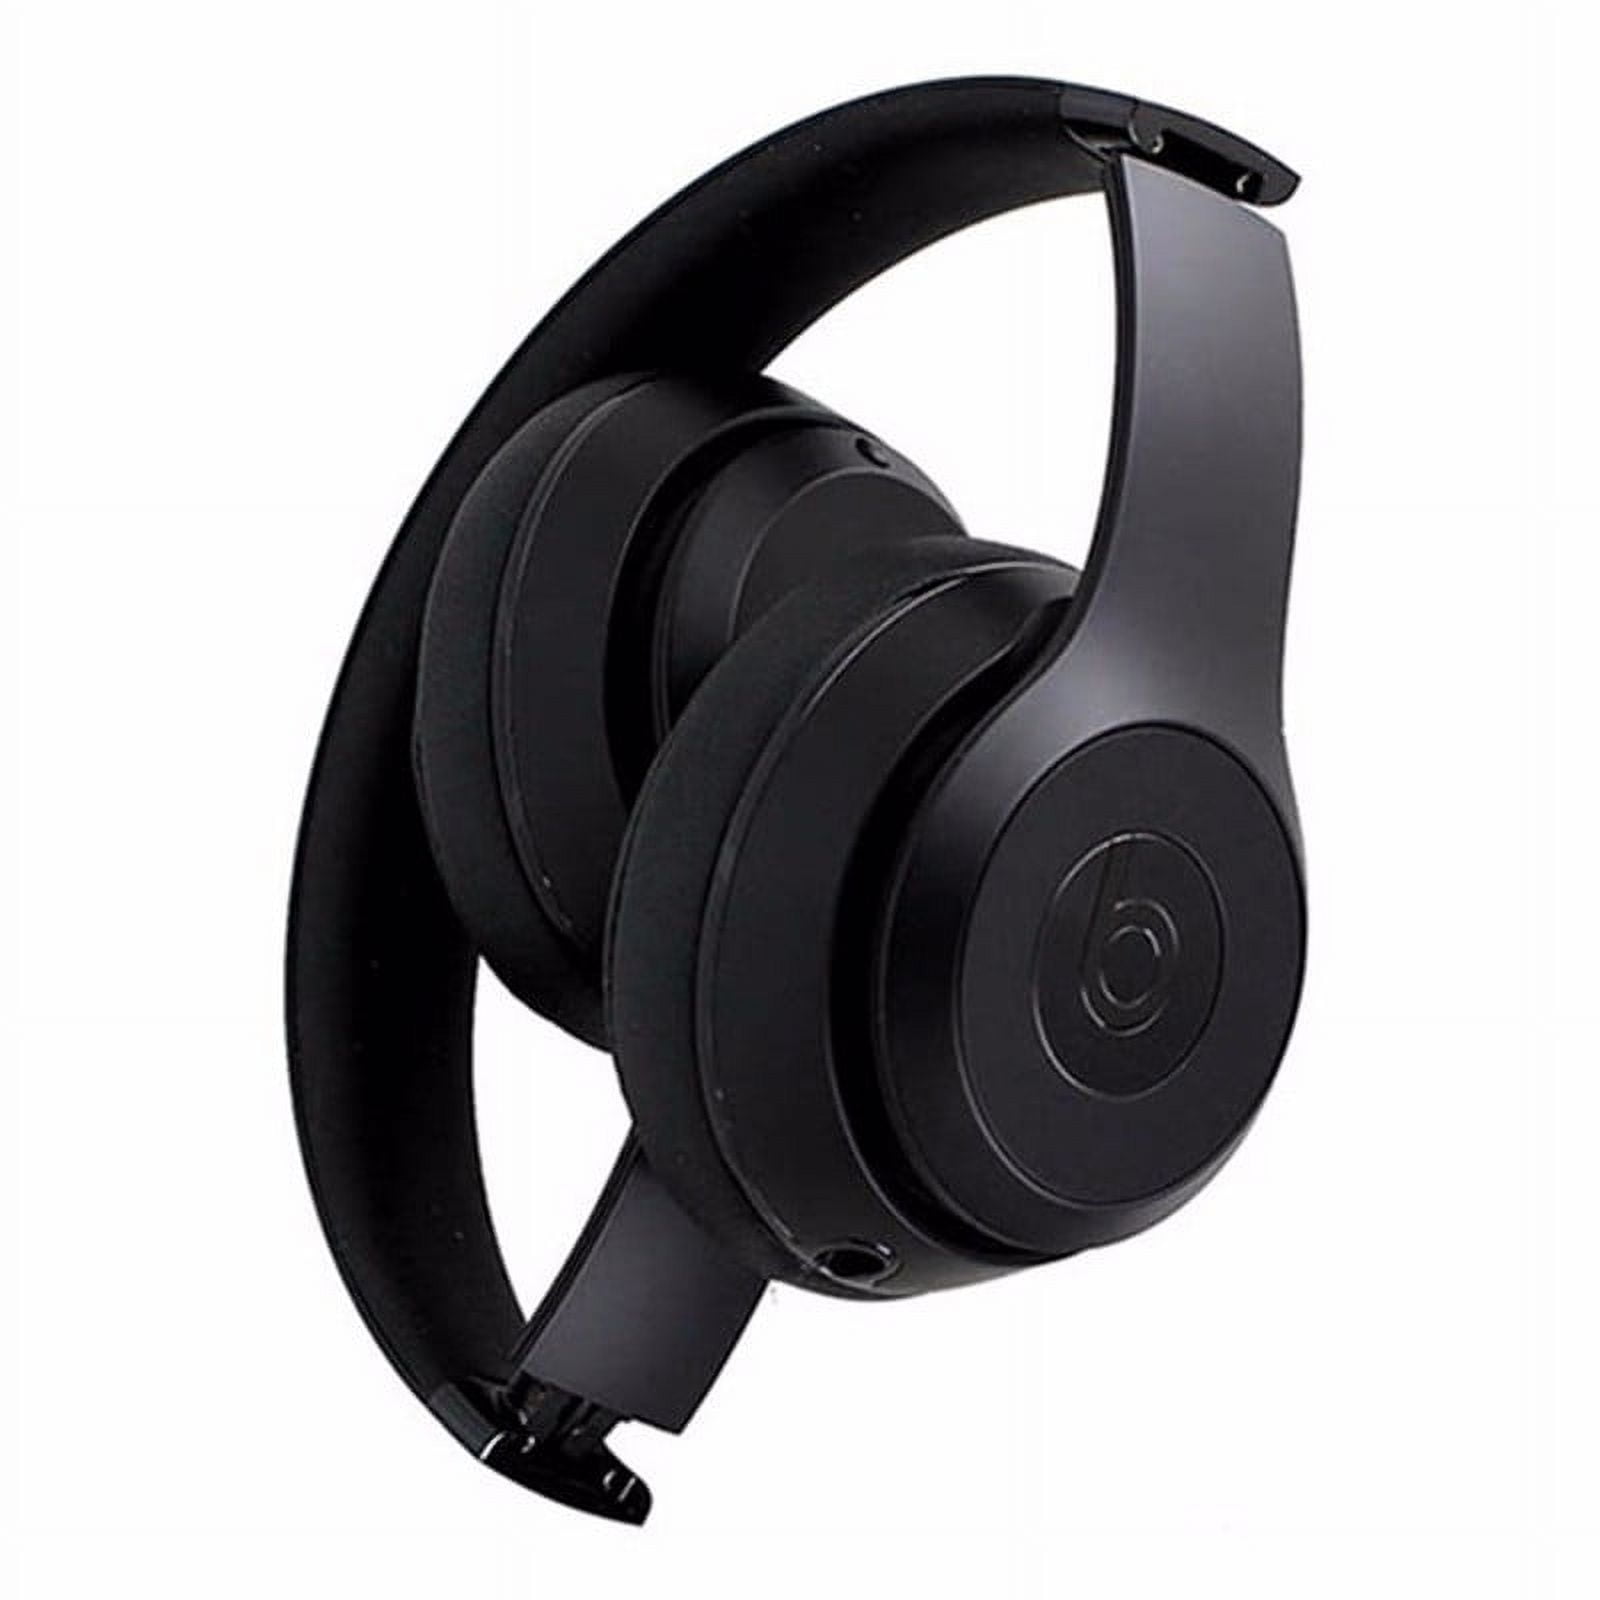 Beats Solo3 Wireless On Ear Headphones   Walmart.com